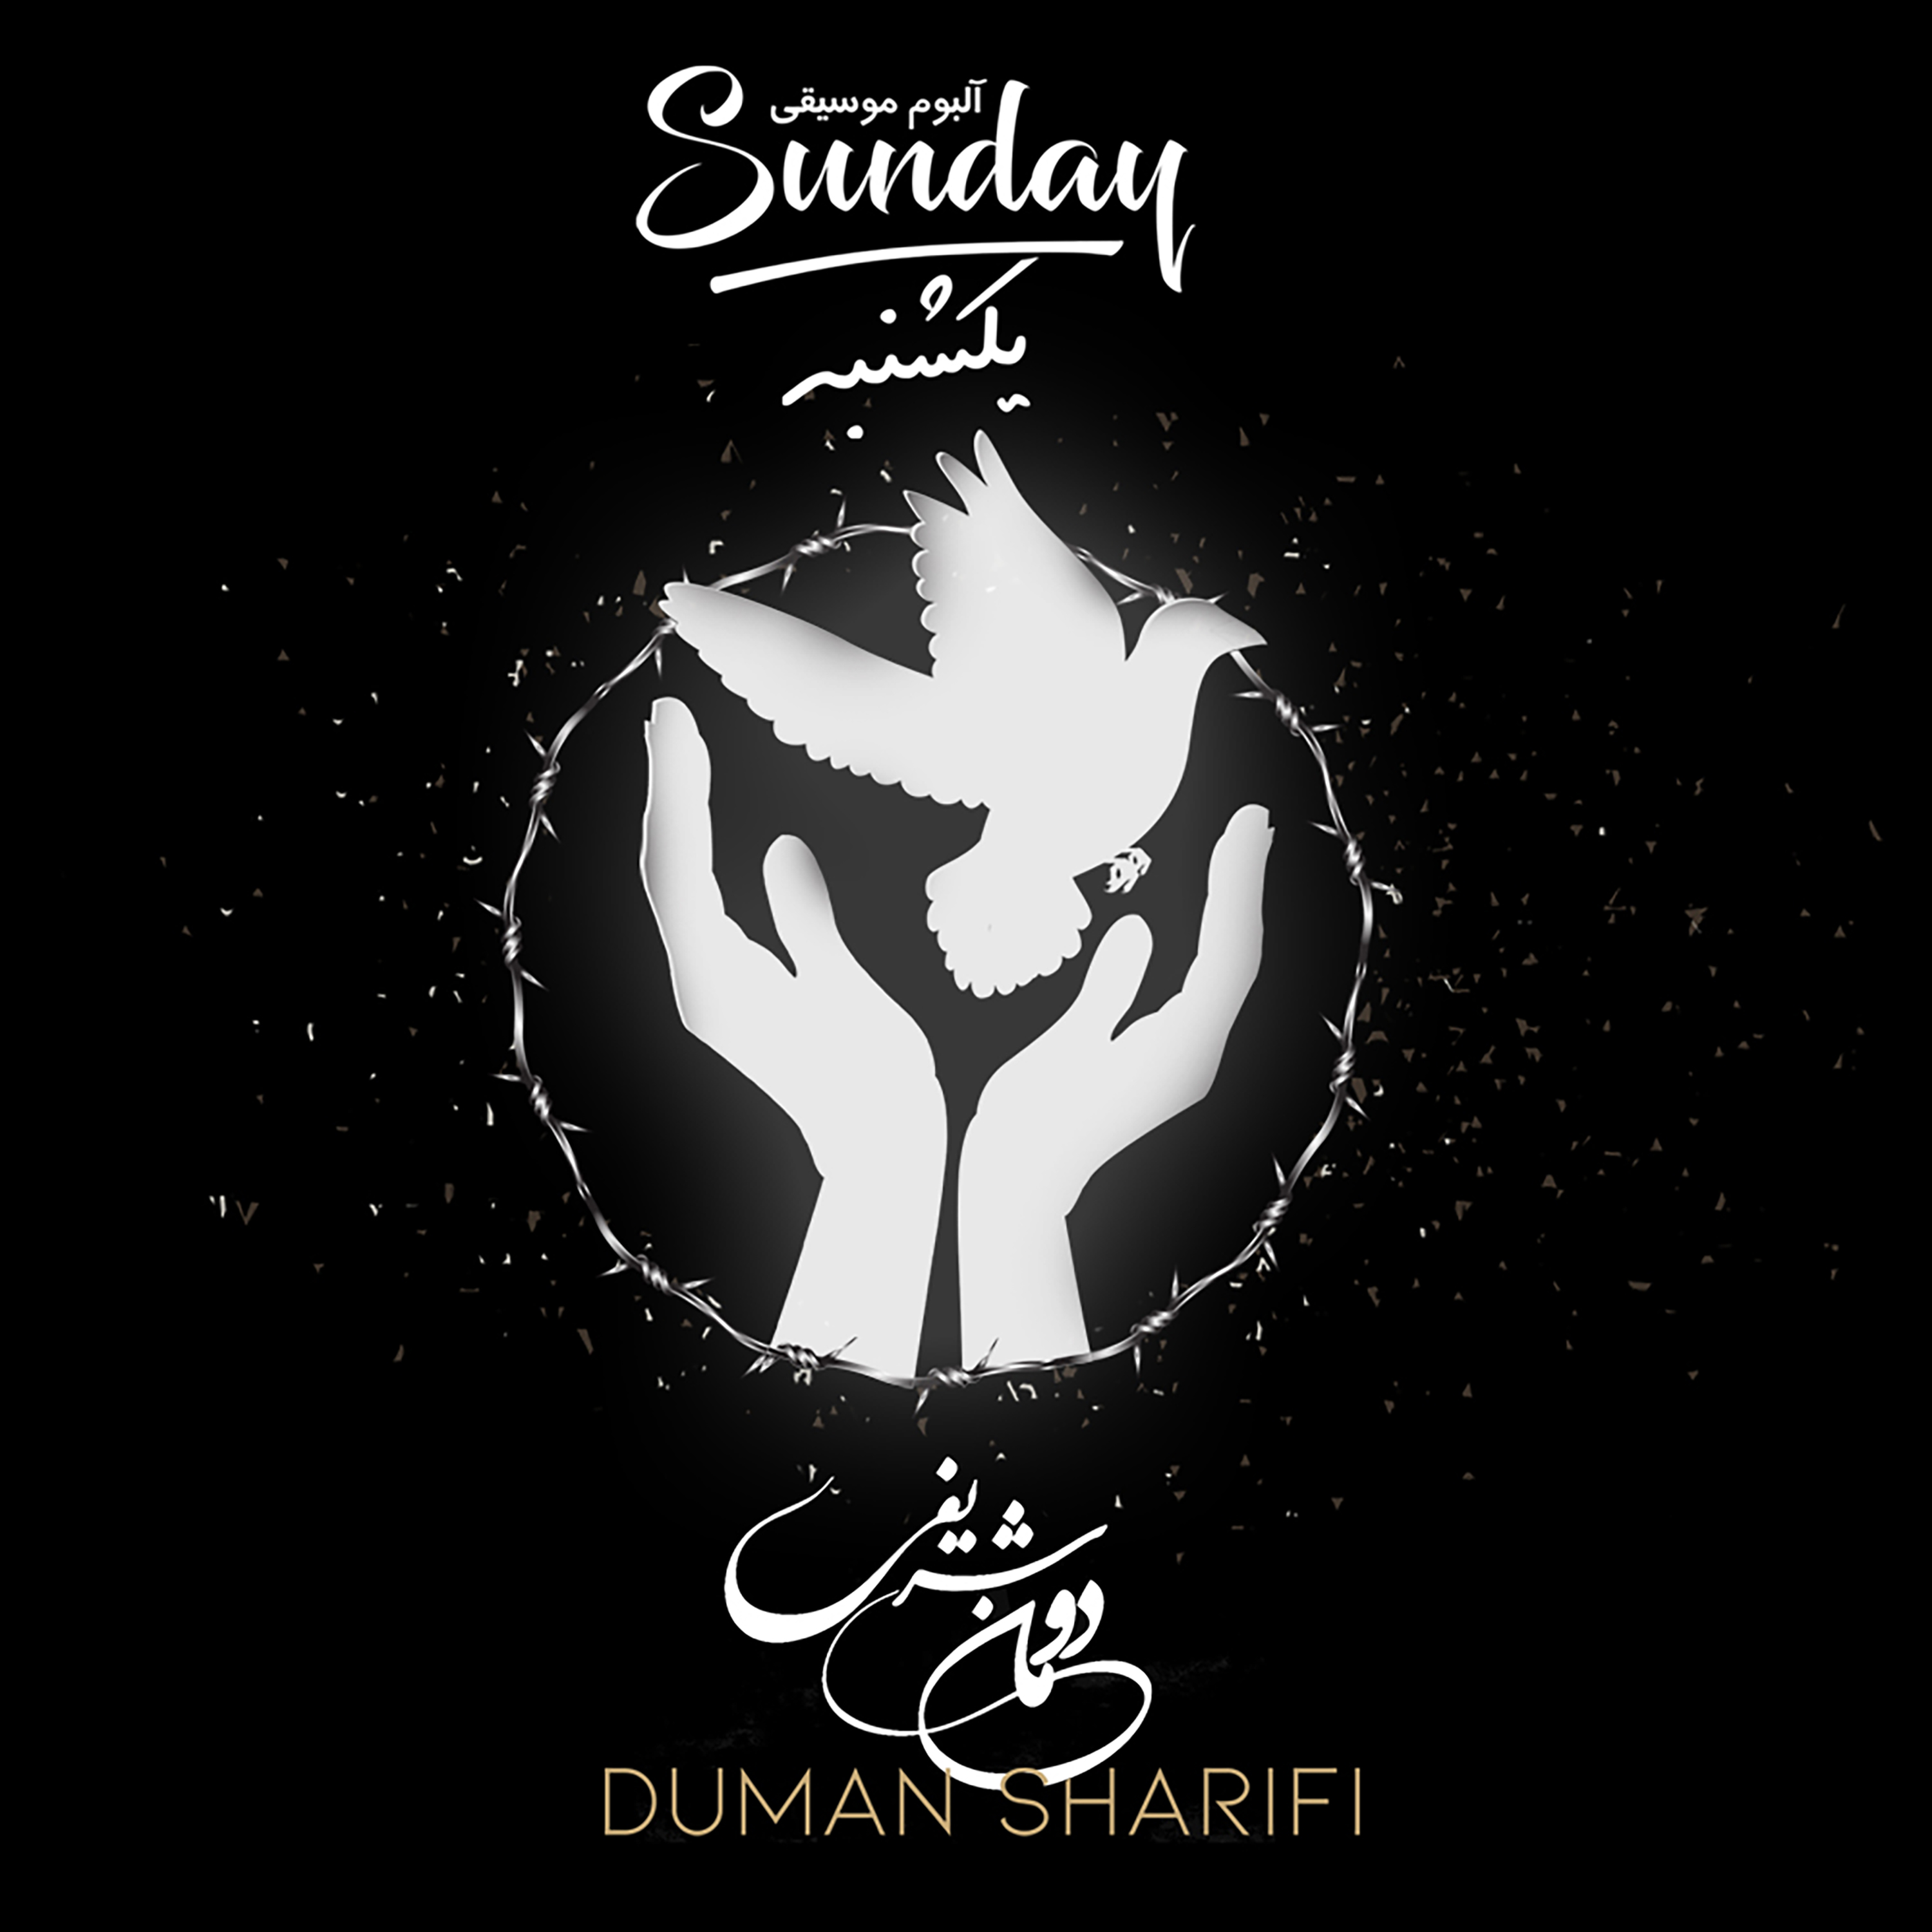  دانلود آهنگ جدید دومان شریفی - یکشنبه | Download New Music By Duman Sharifi - Sunday